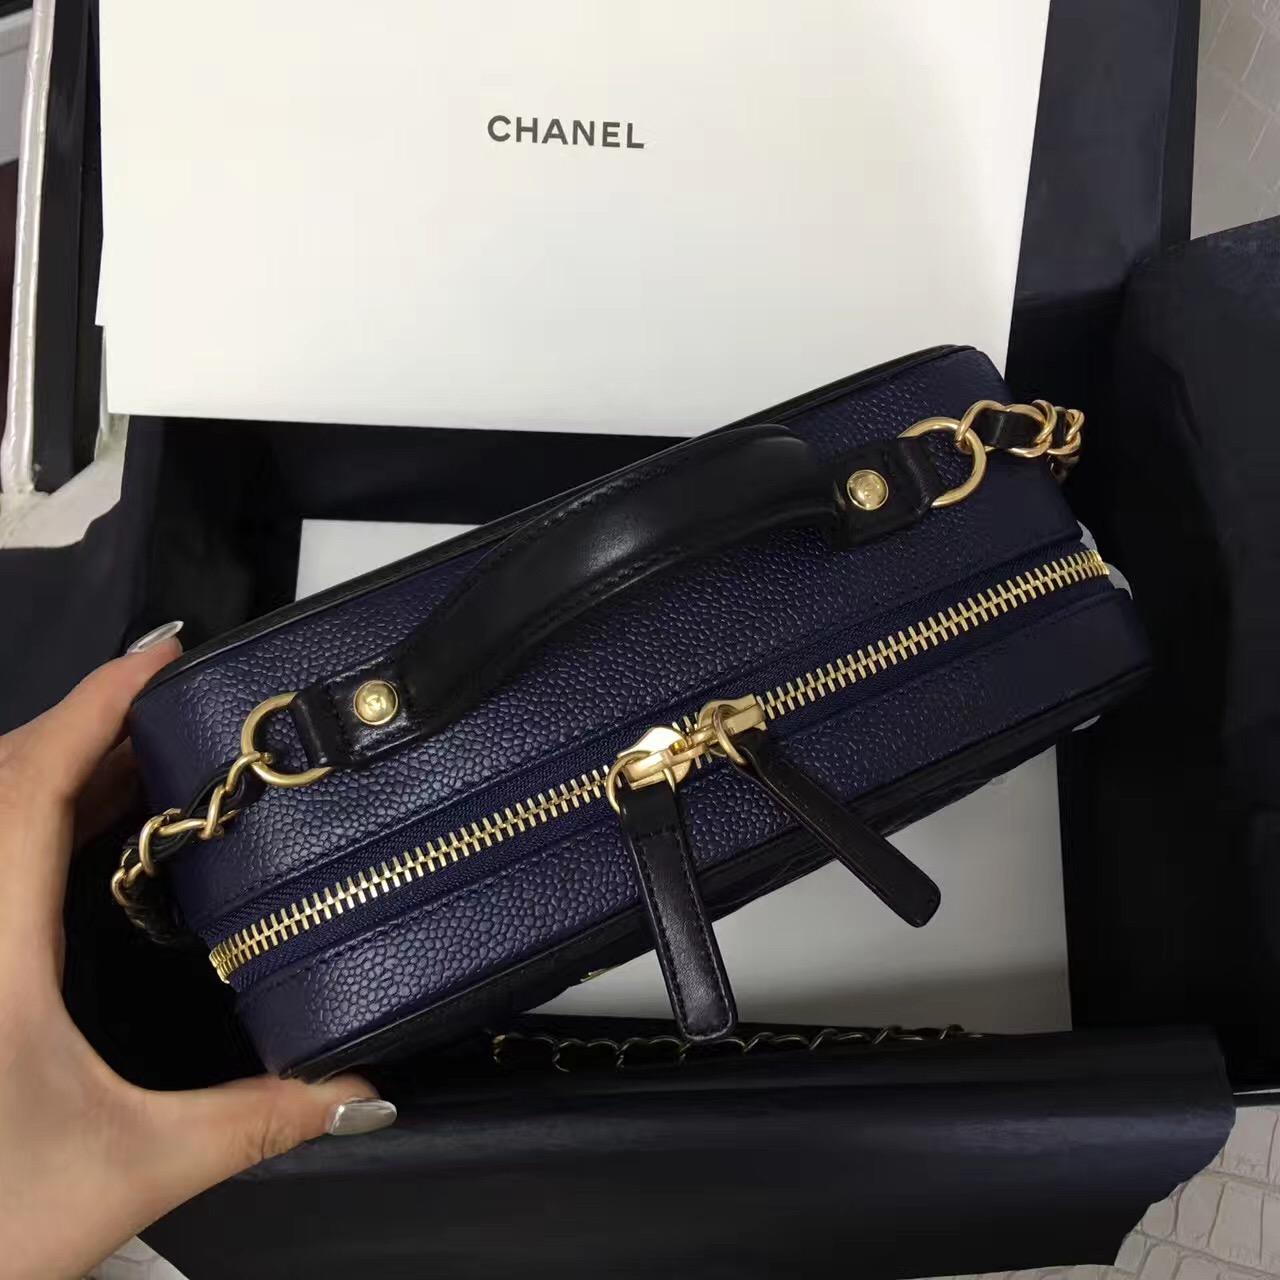 小香女包 Vanity case bag 17年專櫃櫥窗新款New化妝包 蓝色配黑色 盒子鏈條包